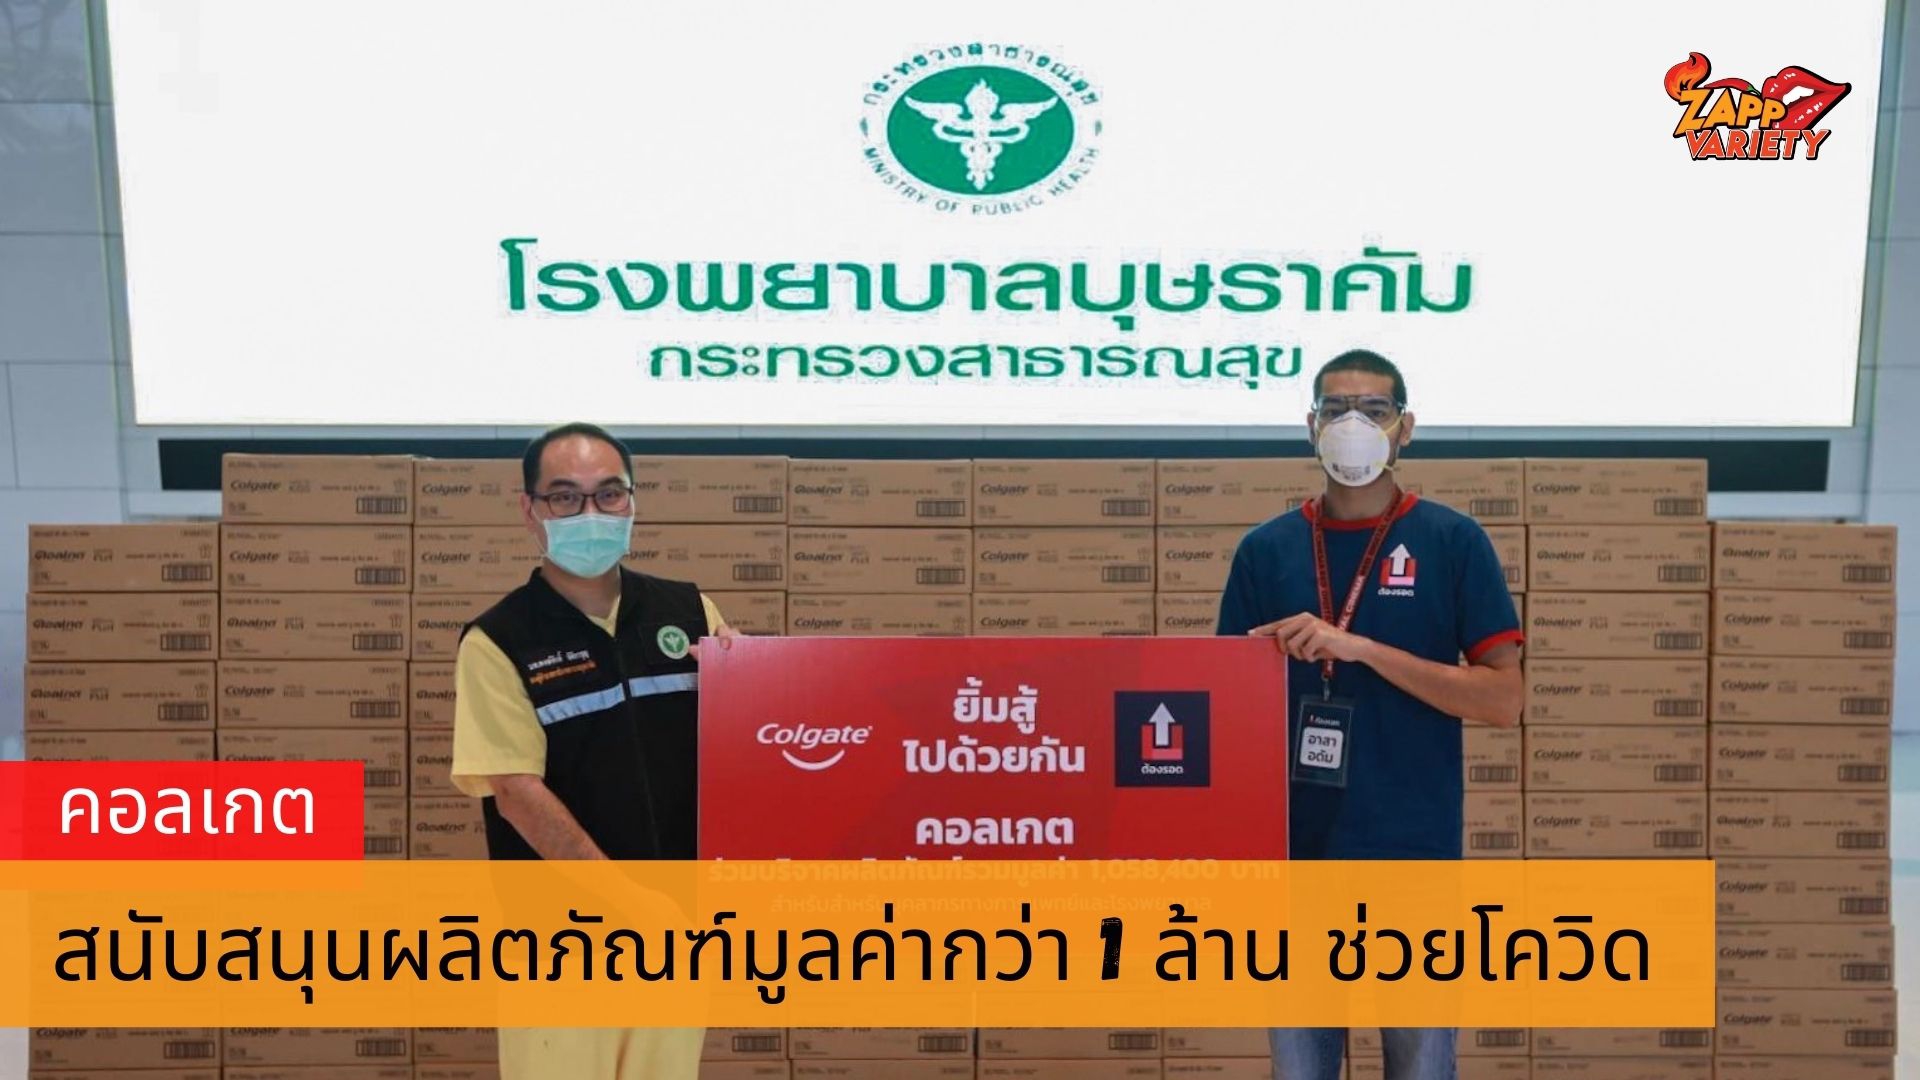 คอลเกต “ยิ้มสู้ไปด้วยกัน” สนับสนุนผลิตภัณฑ์มูลค่ากว่า 1 ล้านบาท ผ่านโครงการ “ต้องรอด” โดยกลุ่มอาสา Up for Thai เพื่อส่งมอบแก่โรงพยาบาลสนามบุษราคัม